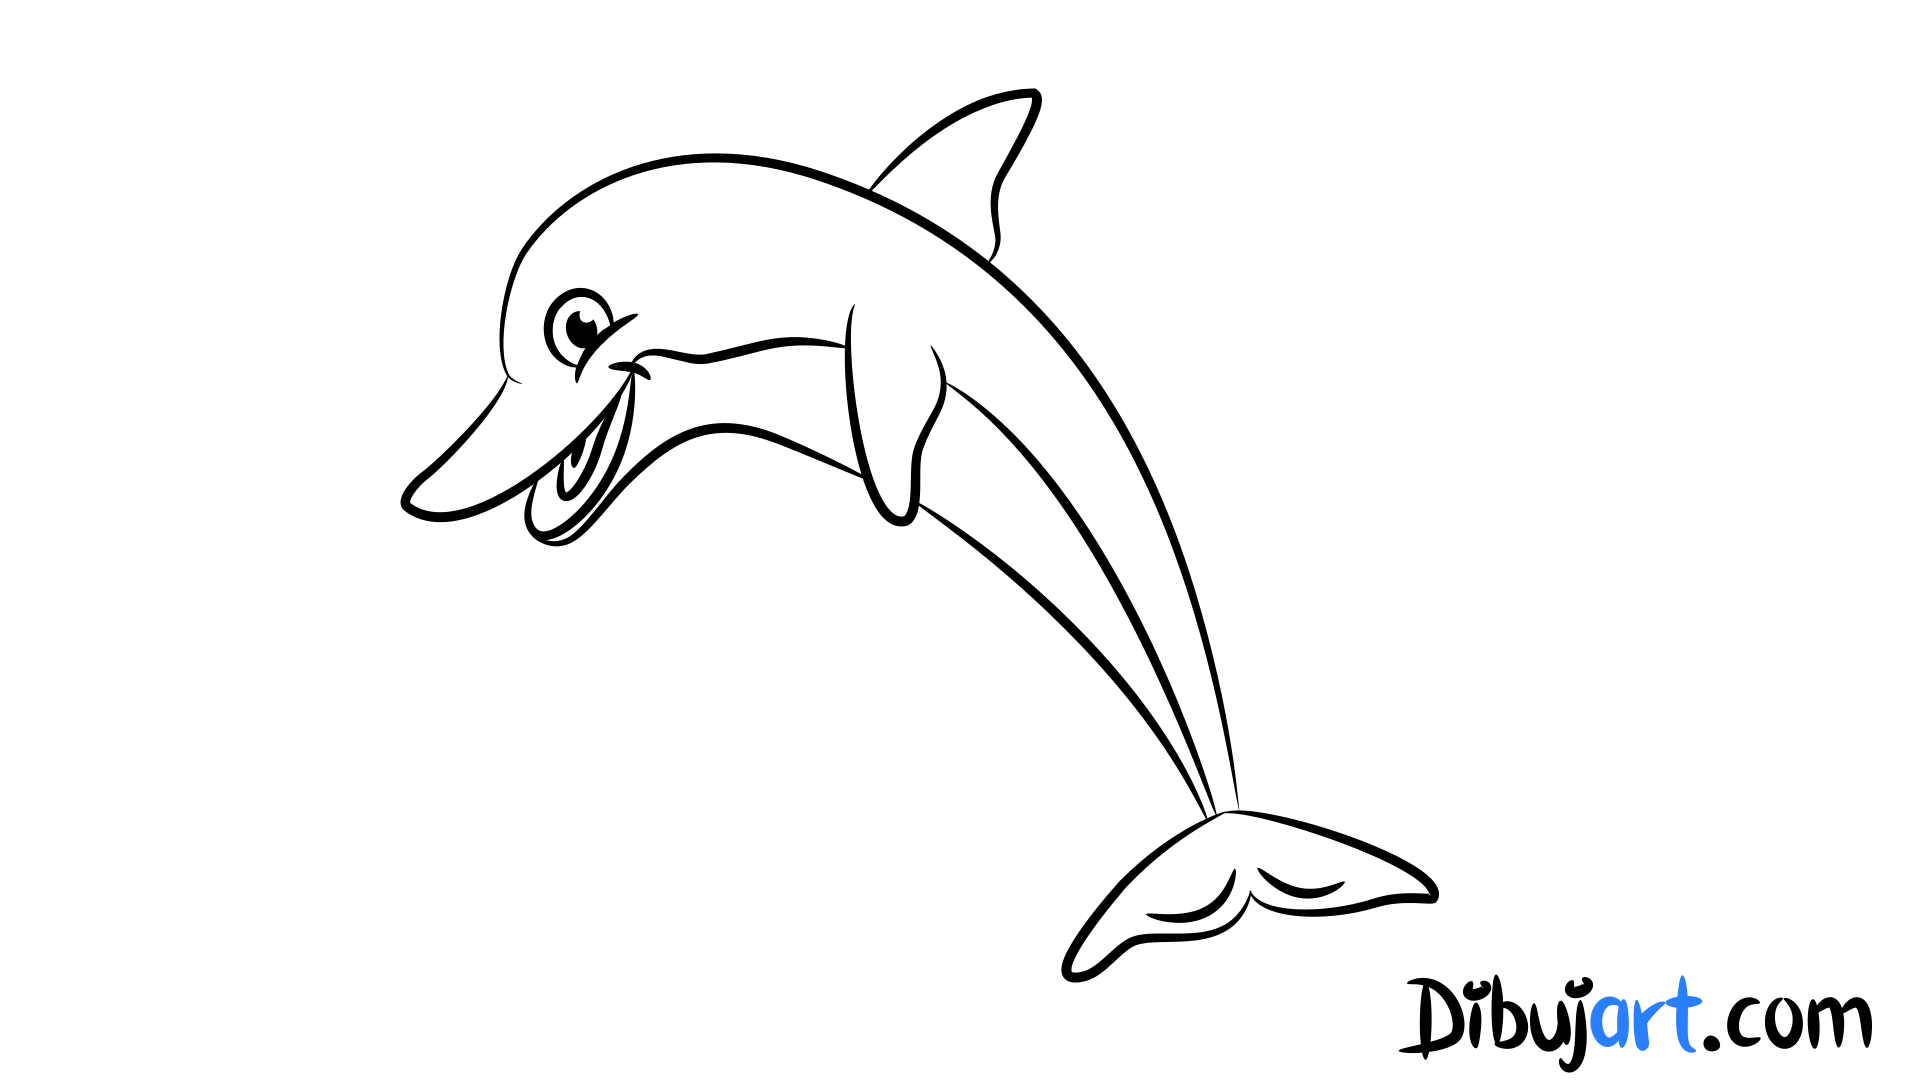 Como dibujar un Delfin - Sketch Bosquejo para colorear.